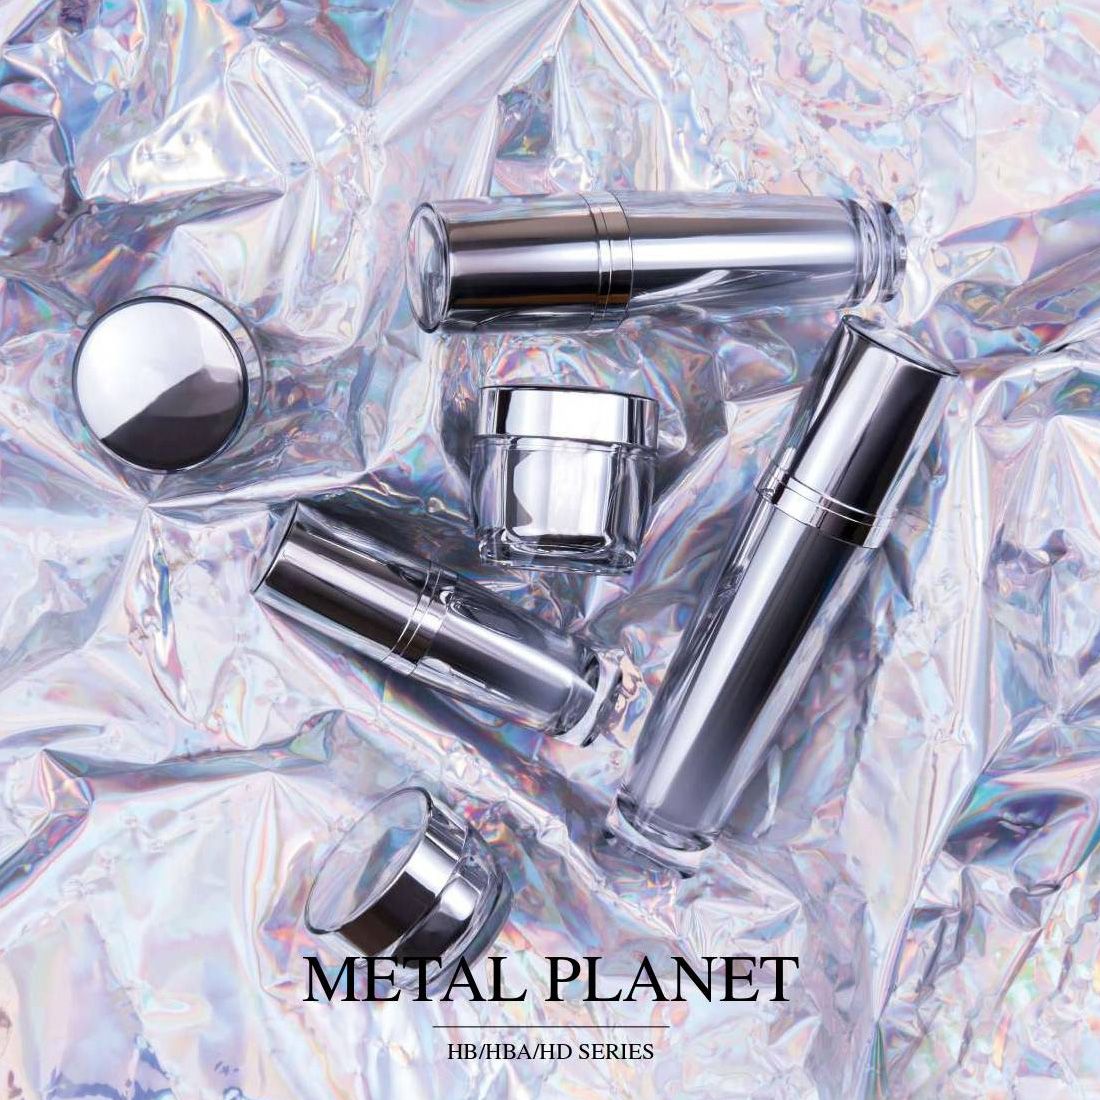 Metal Planet (Bao bì mỹ phẩm & chăm sóc da cao cấp Acrylic) - Dòng HB / HBA / HD